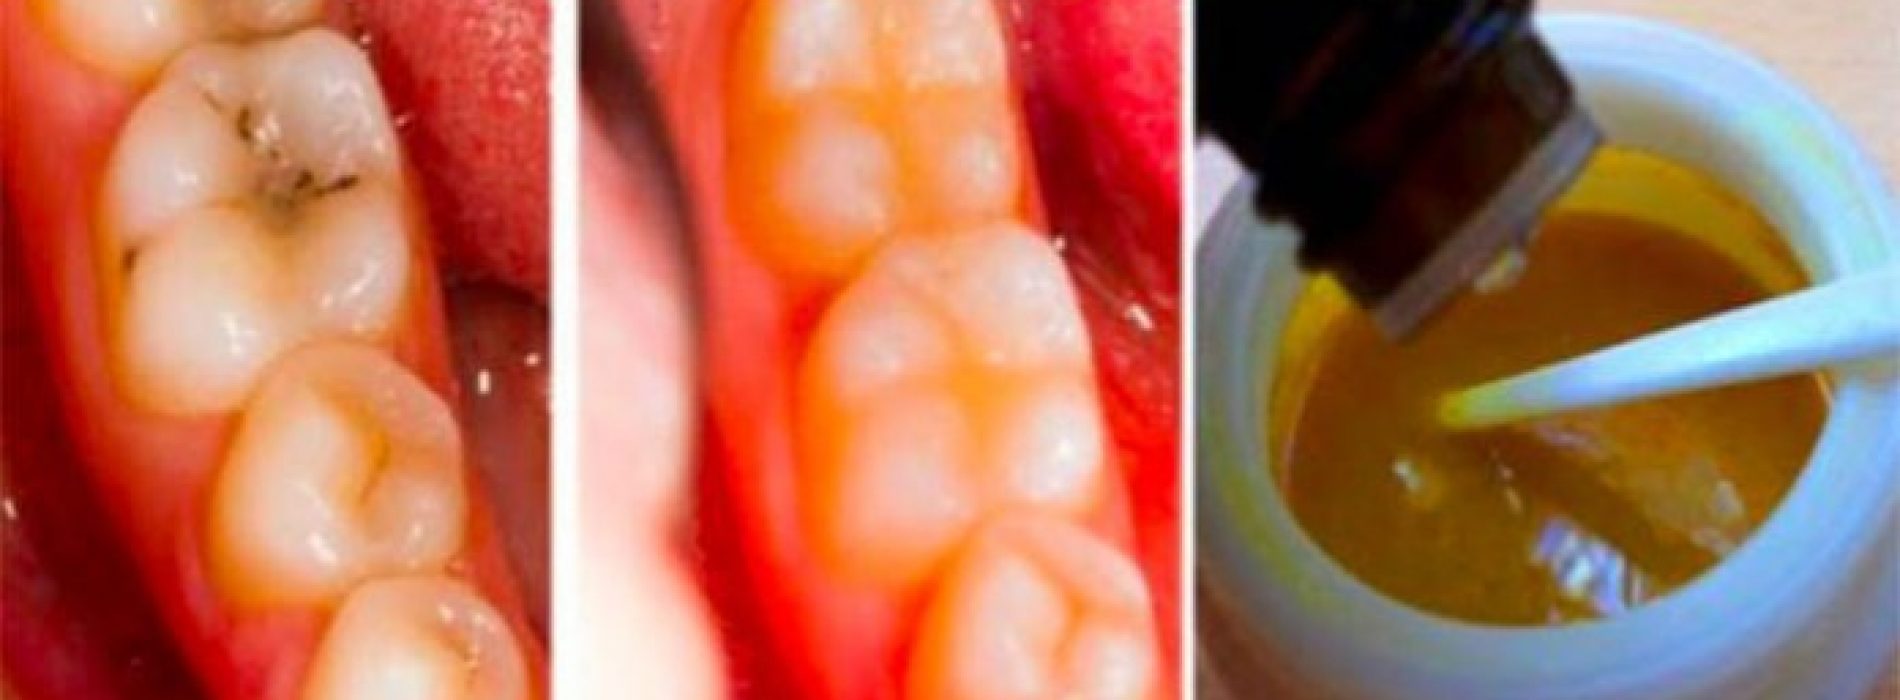 Genees gaatjes natuurlijk en genees tandbederf met deze krachtige tanden maskers